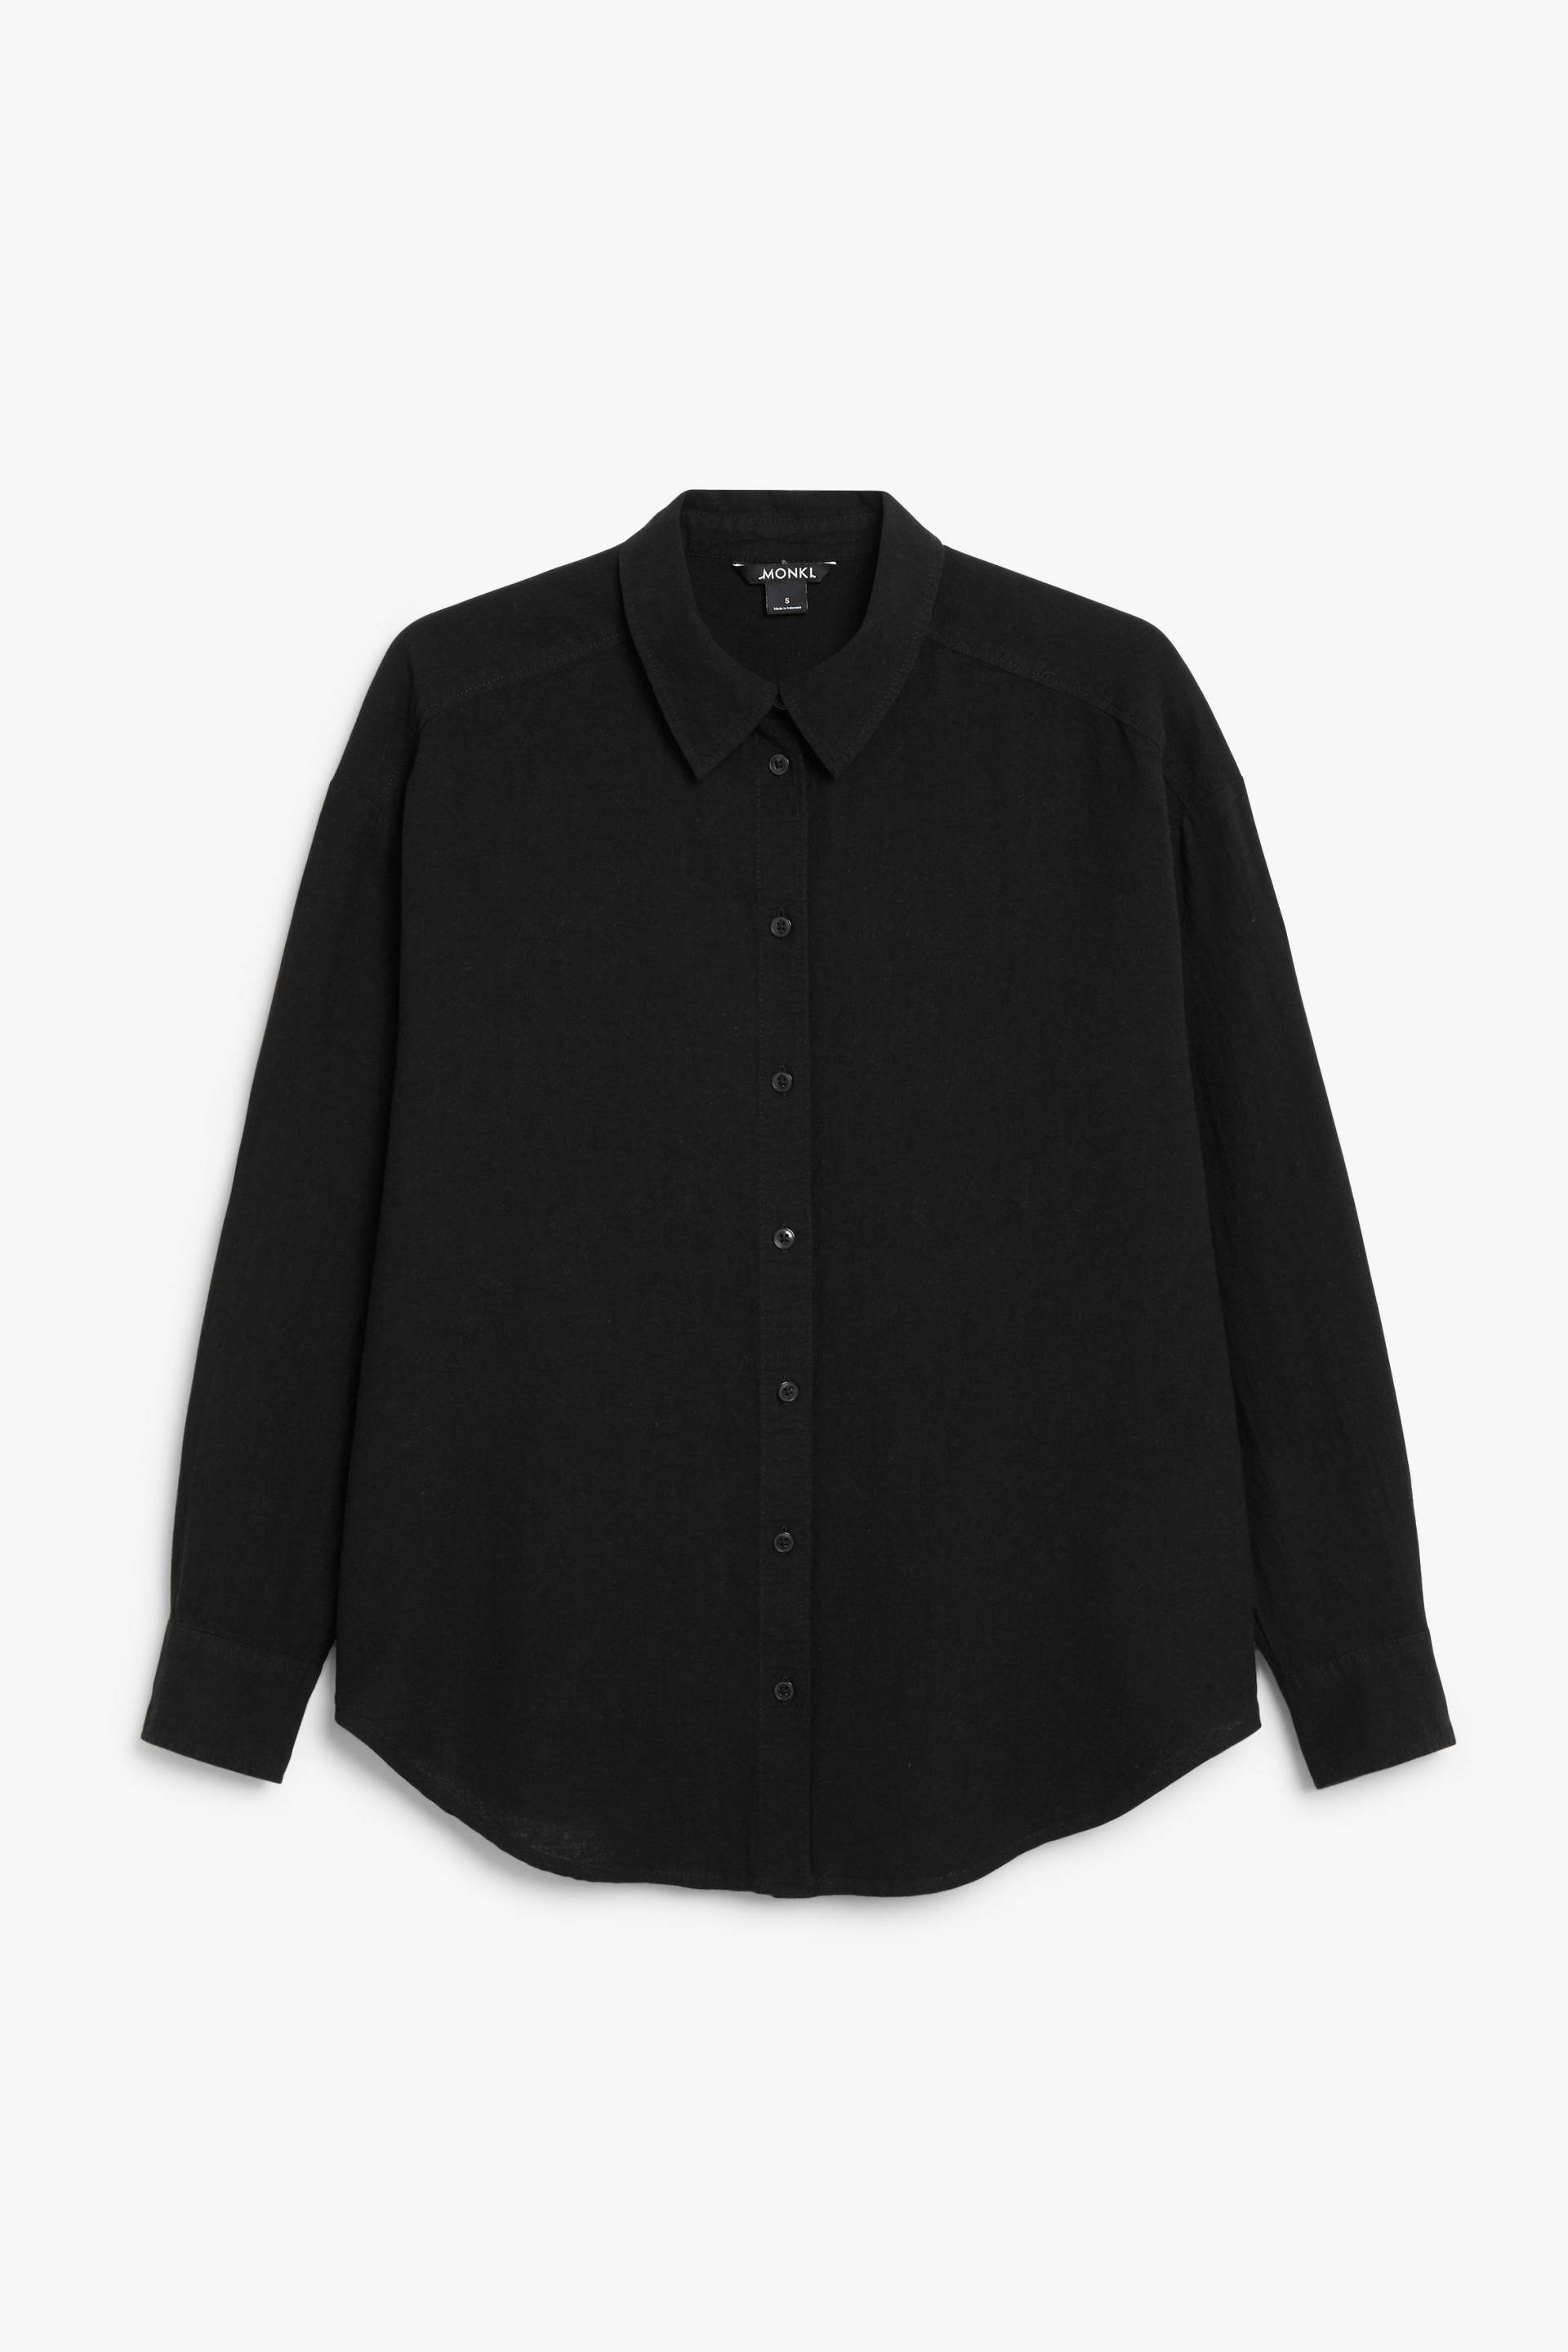 Monki Schwarzes Hemd aus Leinenmischung Schwarz, Freizeithemden in Größe L. Farbe: Black von Monki